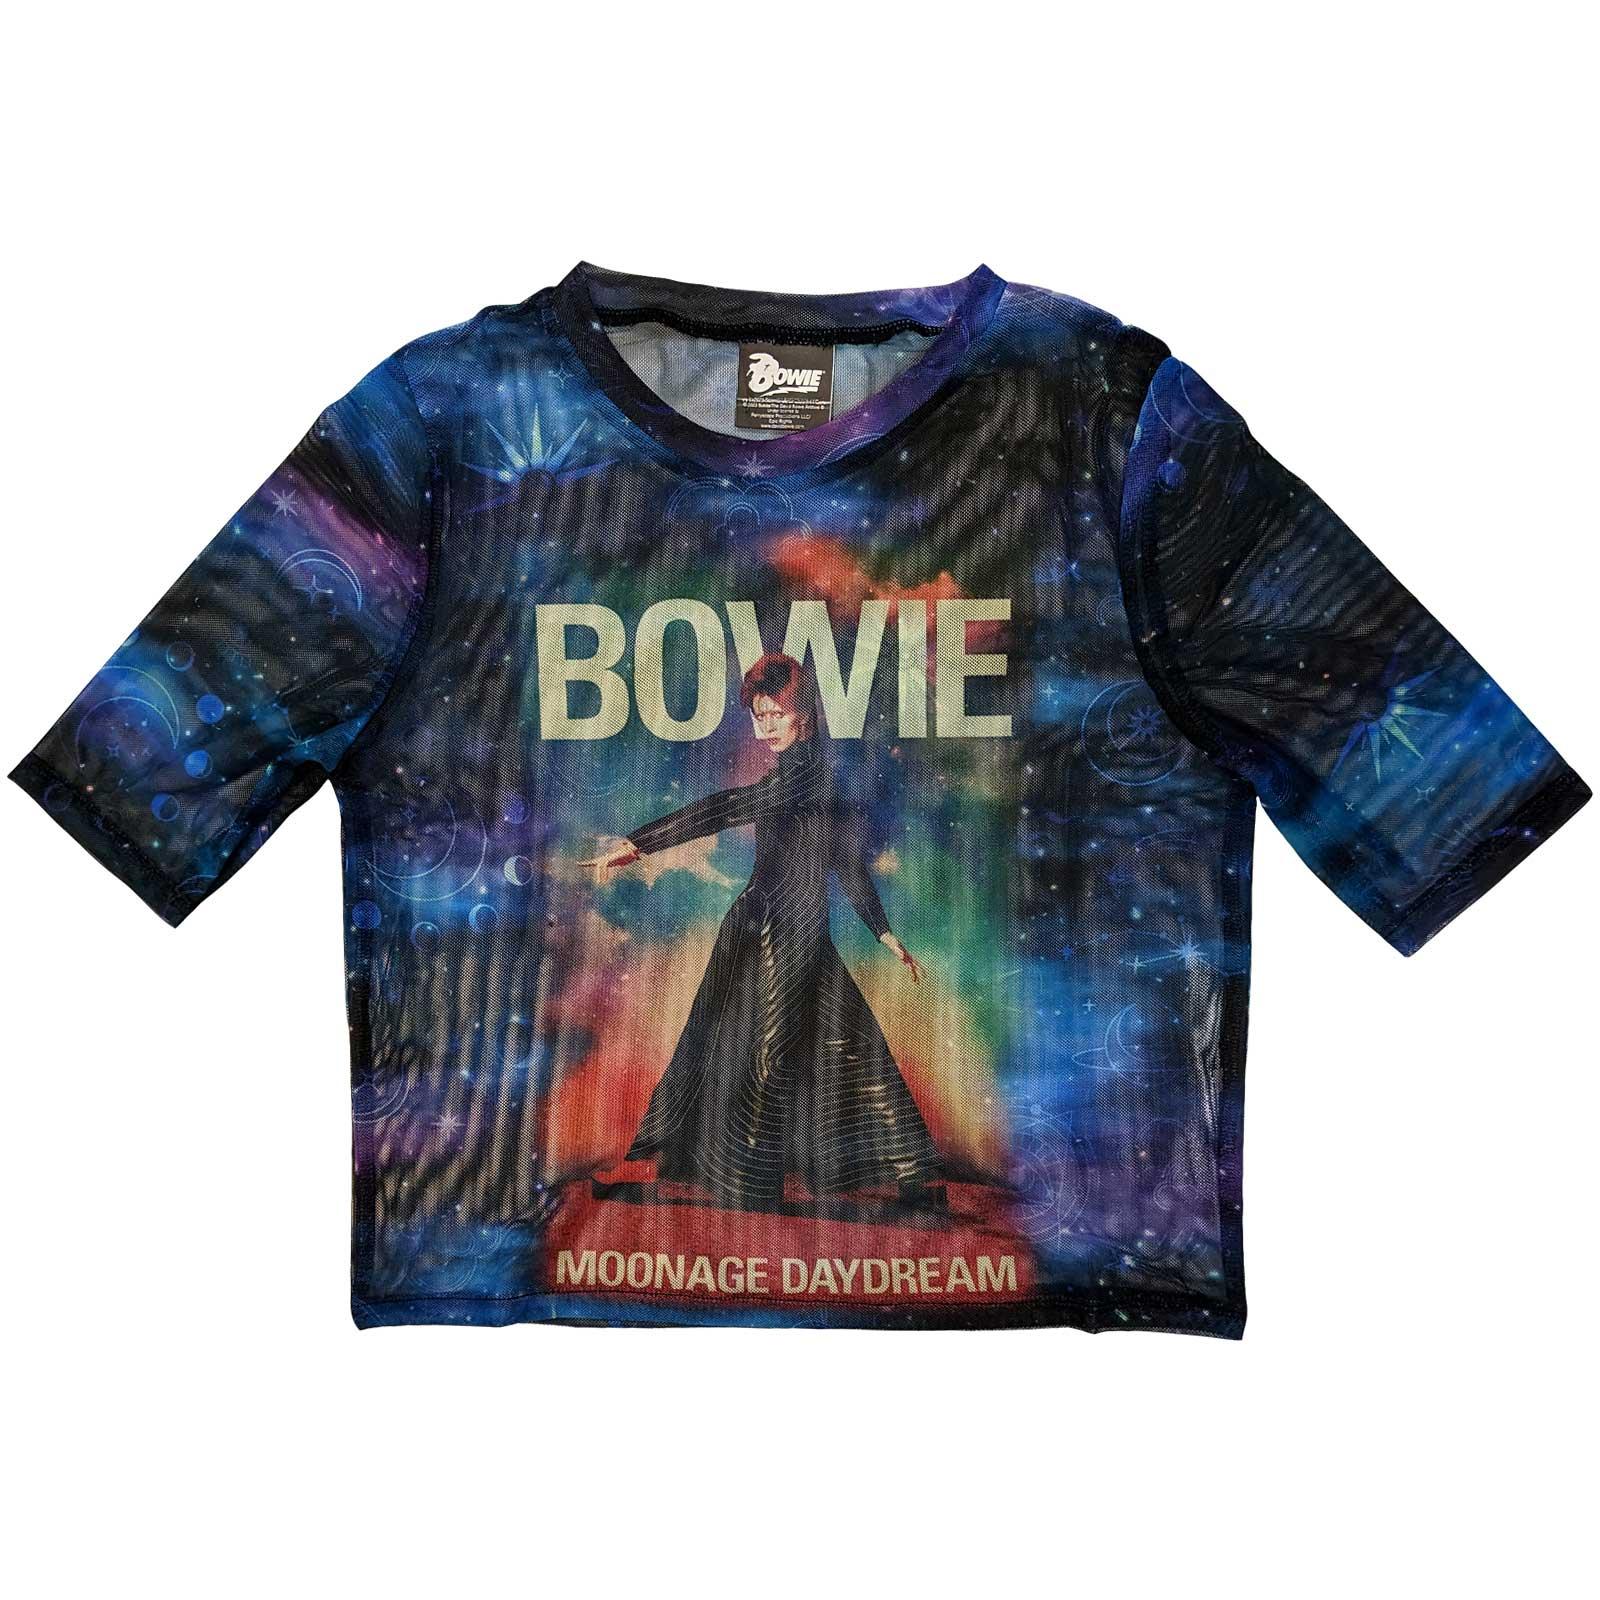 (デヴィッド・ボウイ) David Bowie オフィシャル商品 レディース Moonage Daydream Tシャツ メッシュ クロップ丈 半袖 トップス 【海外通販】